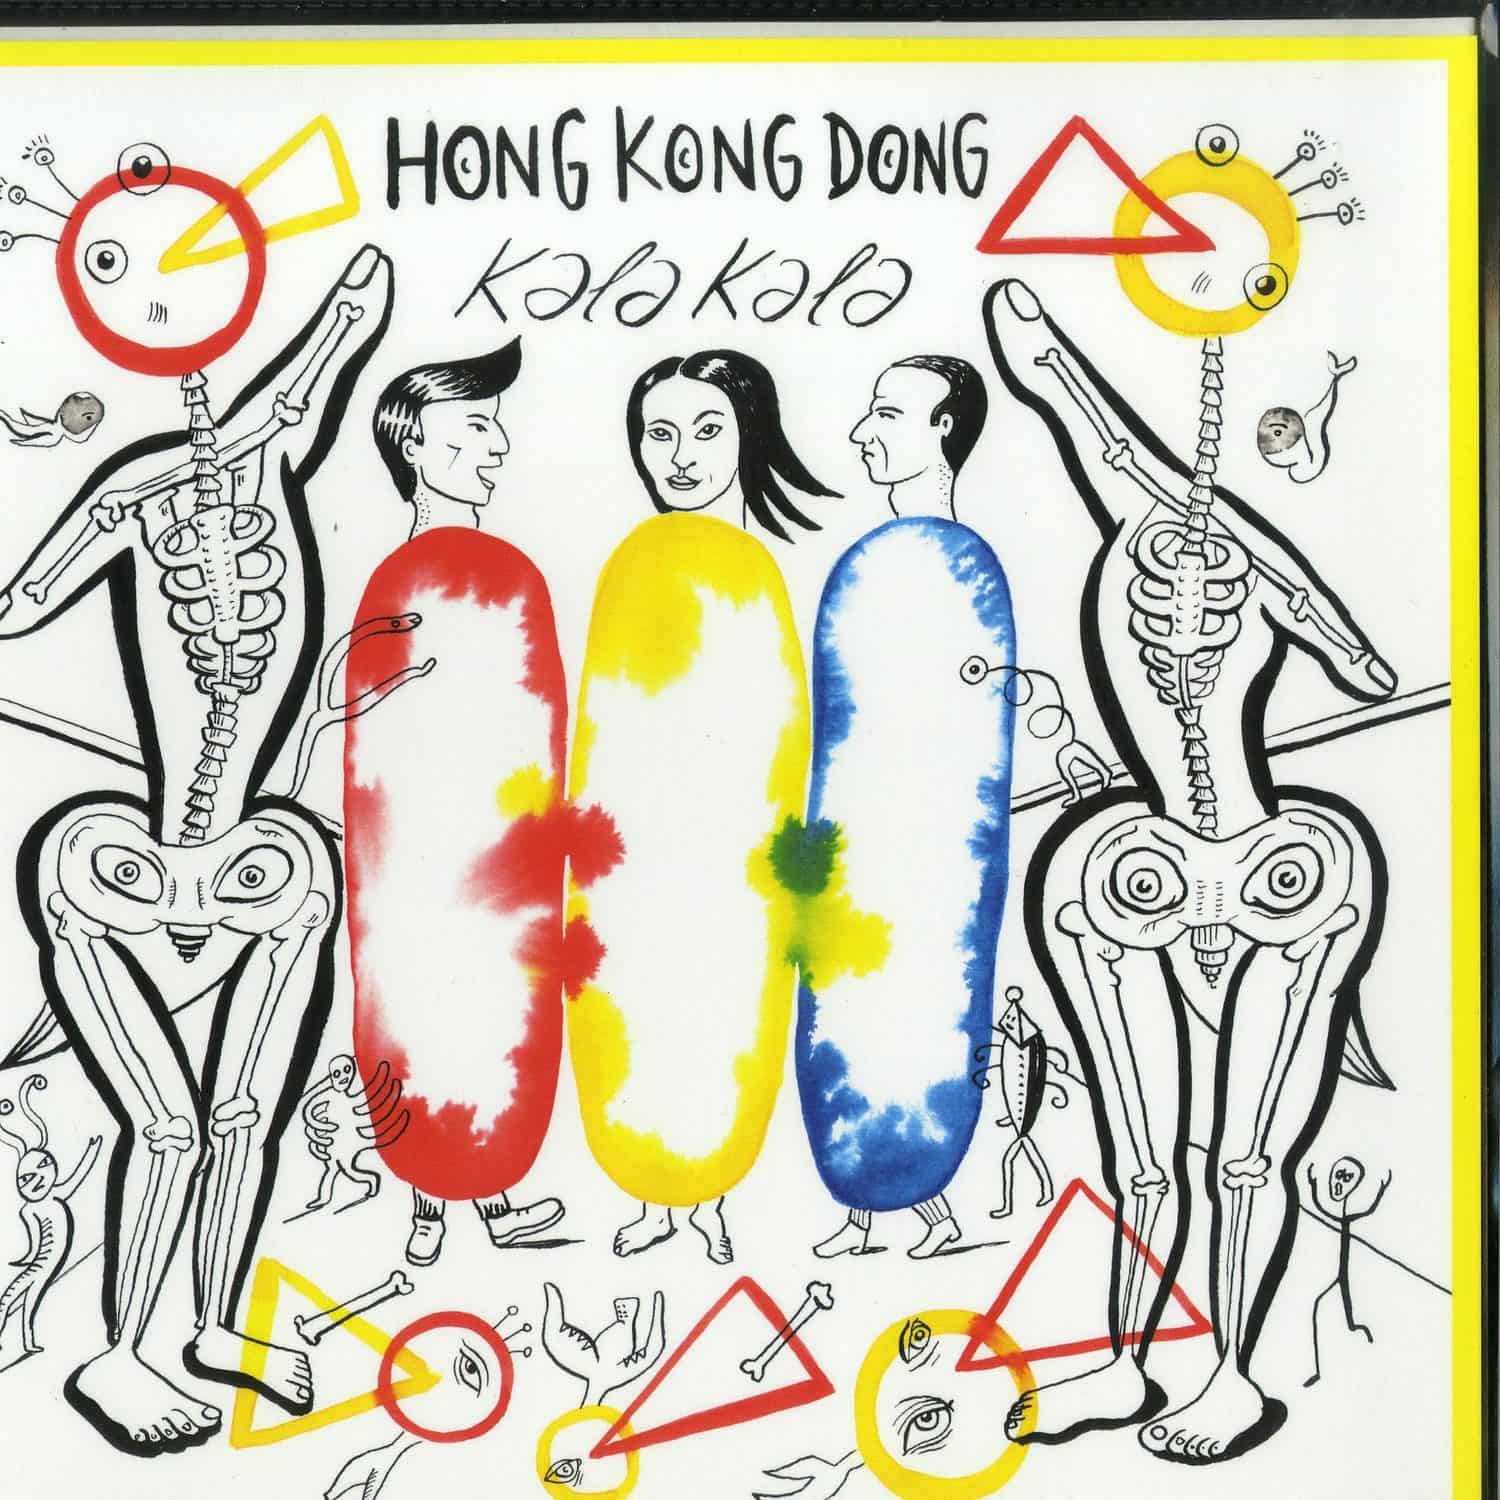 Hong Kong Dong - KALA KALA